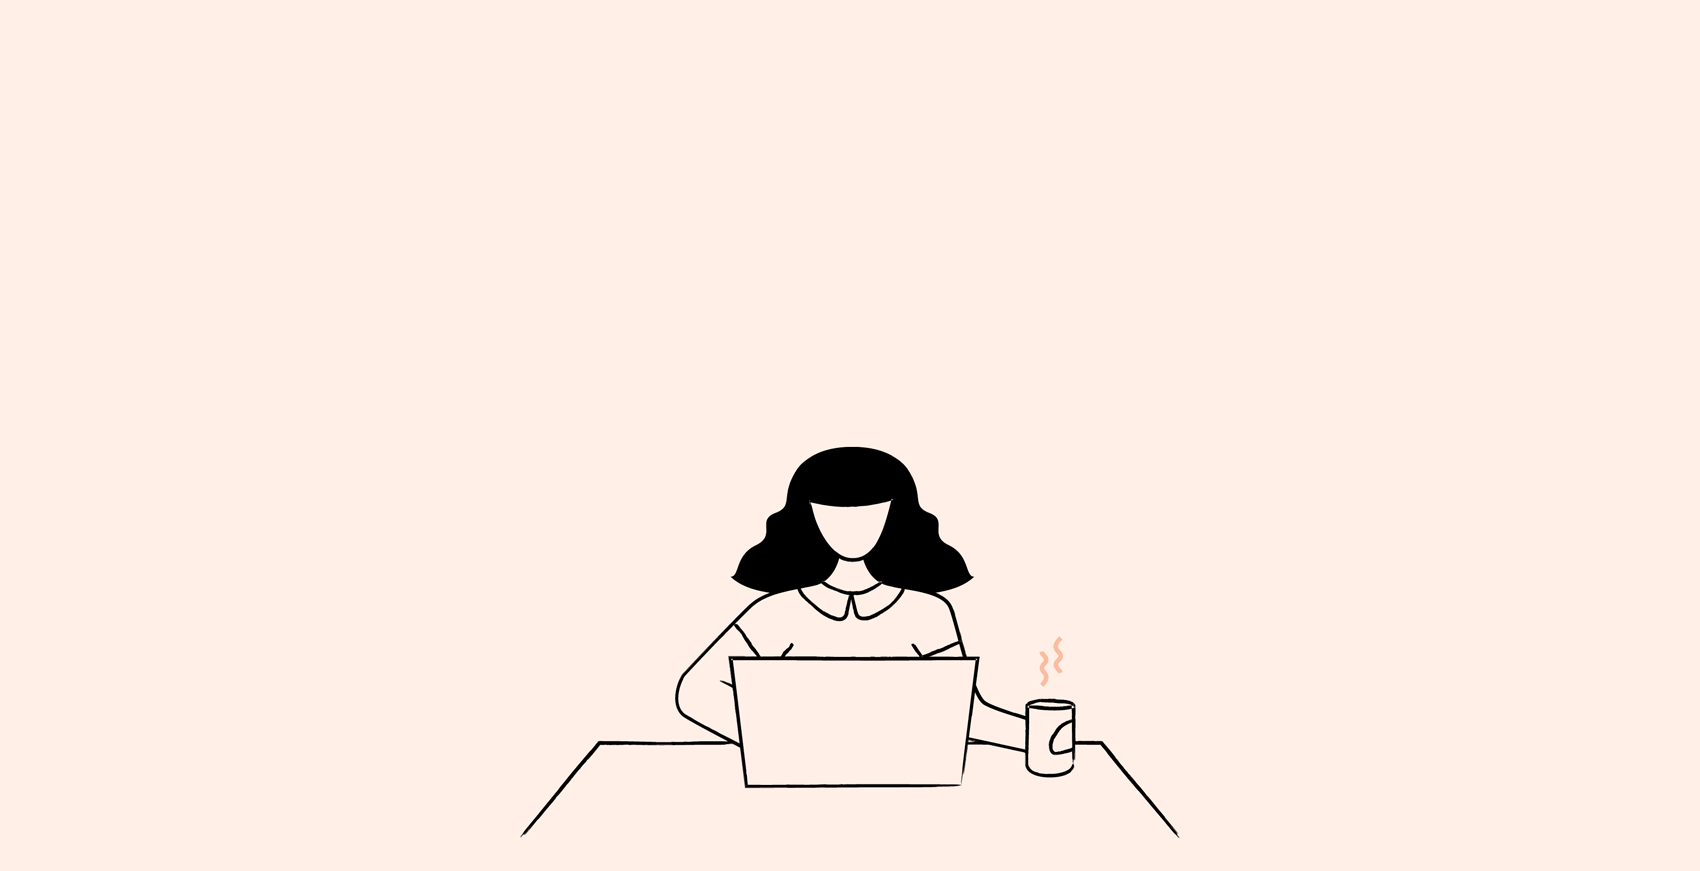 conbini-design-co-illustration-female-girl-desk